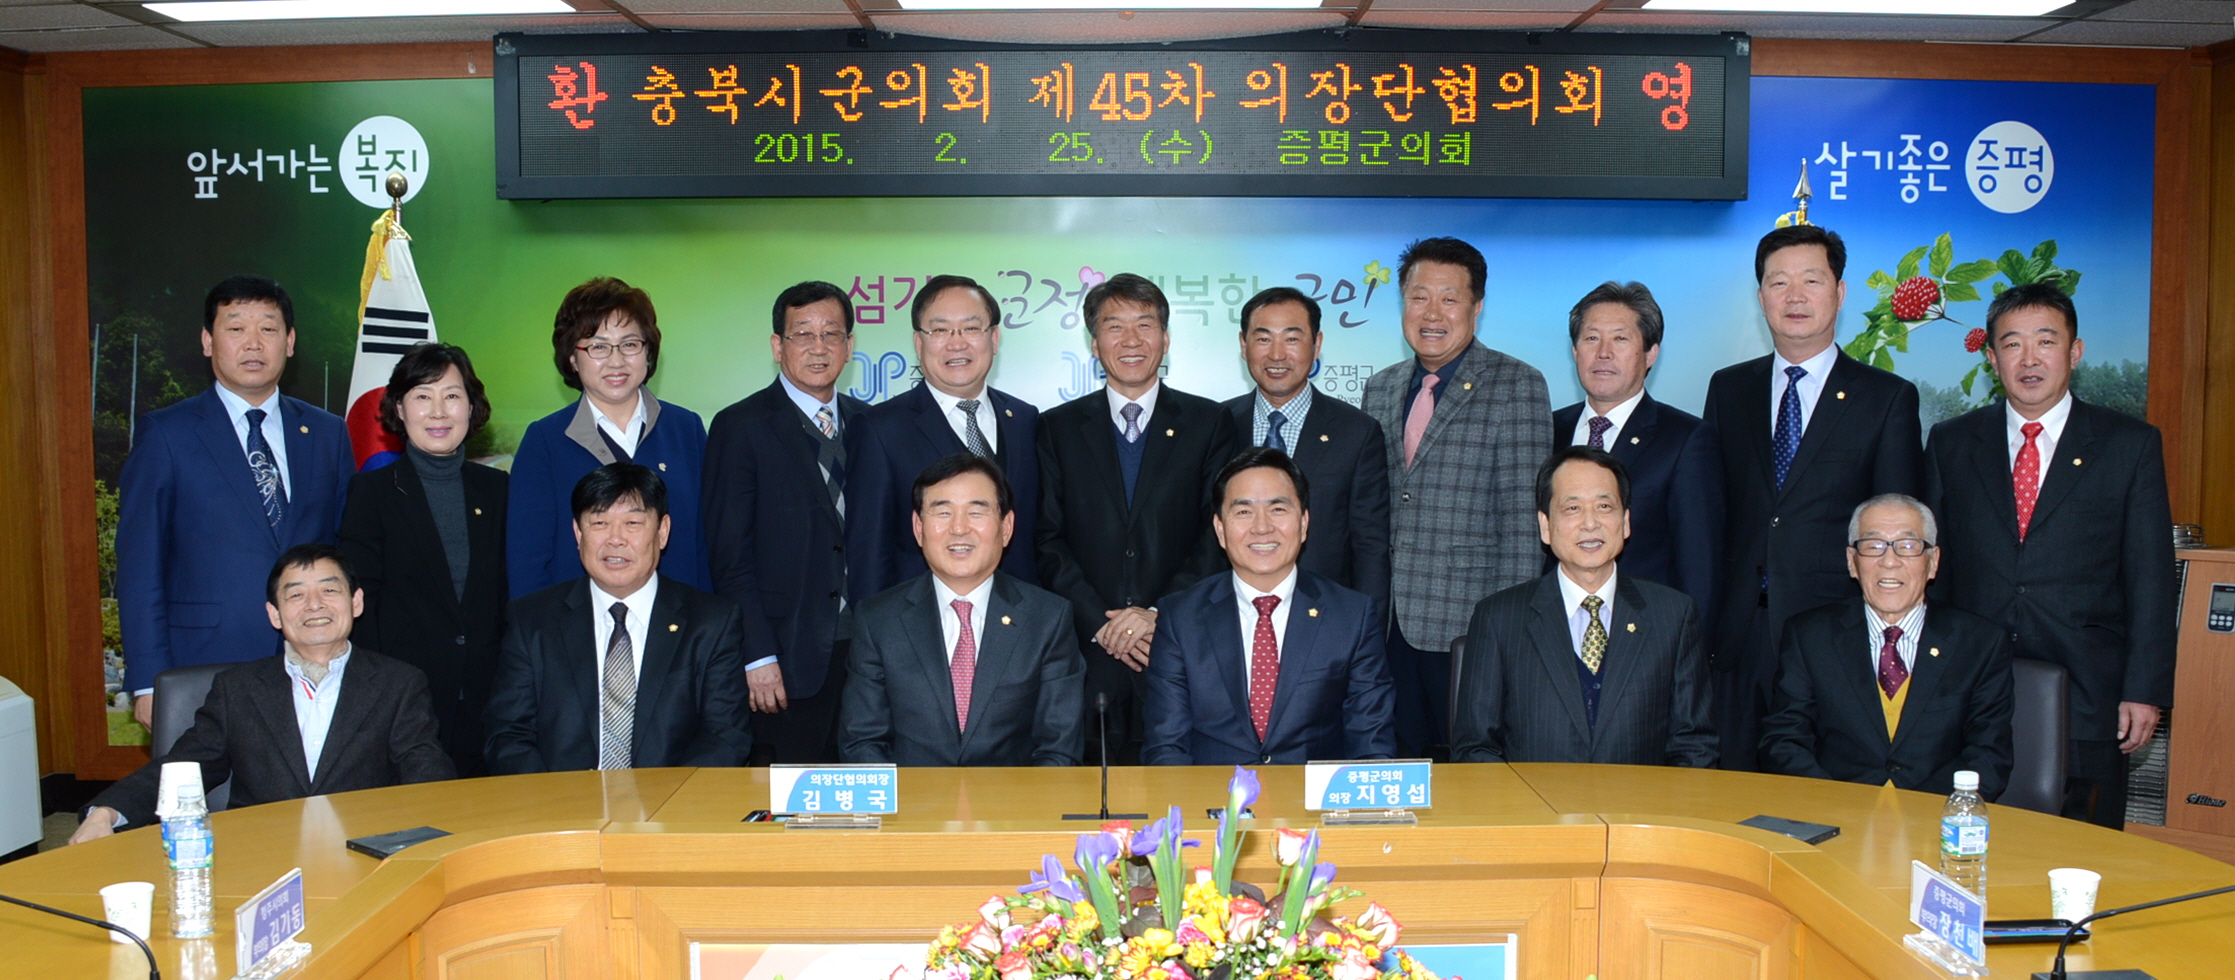 충북시군의회 의장단협의회 증평서 45차 정기회 열어